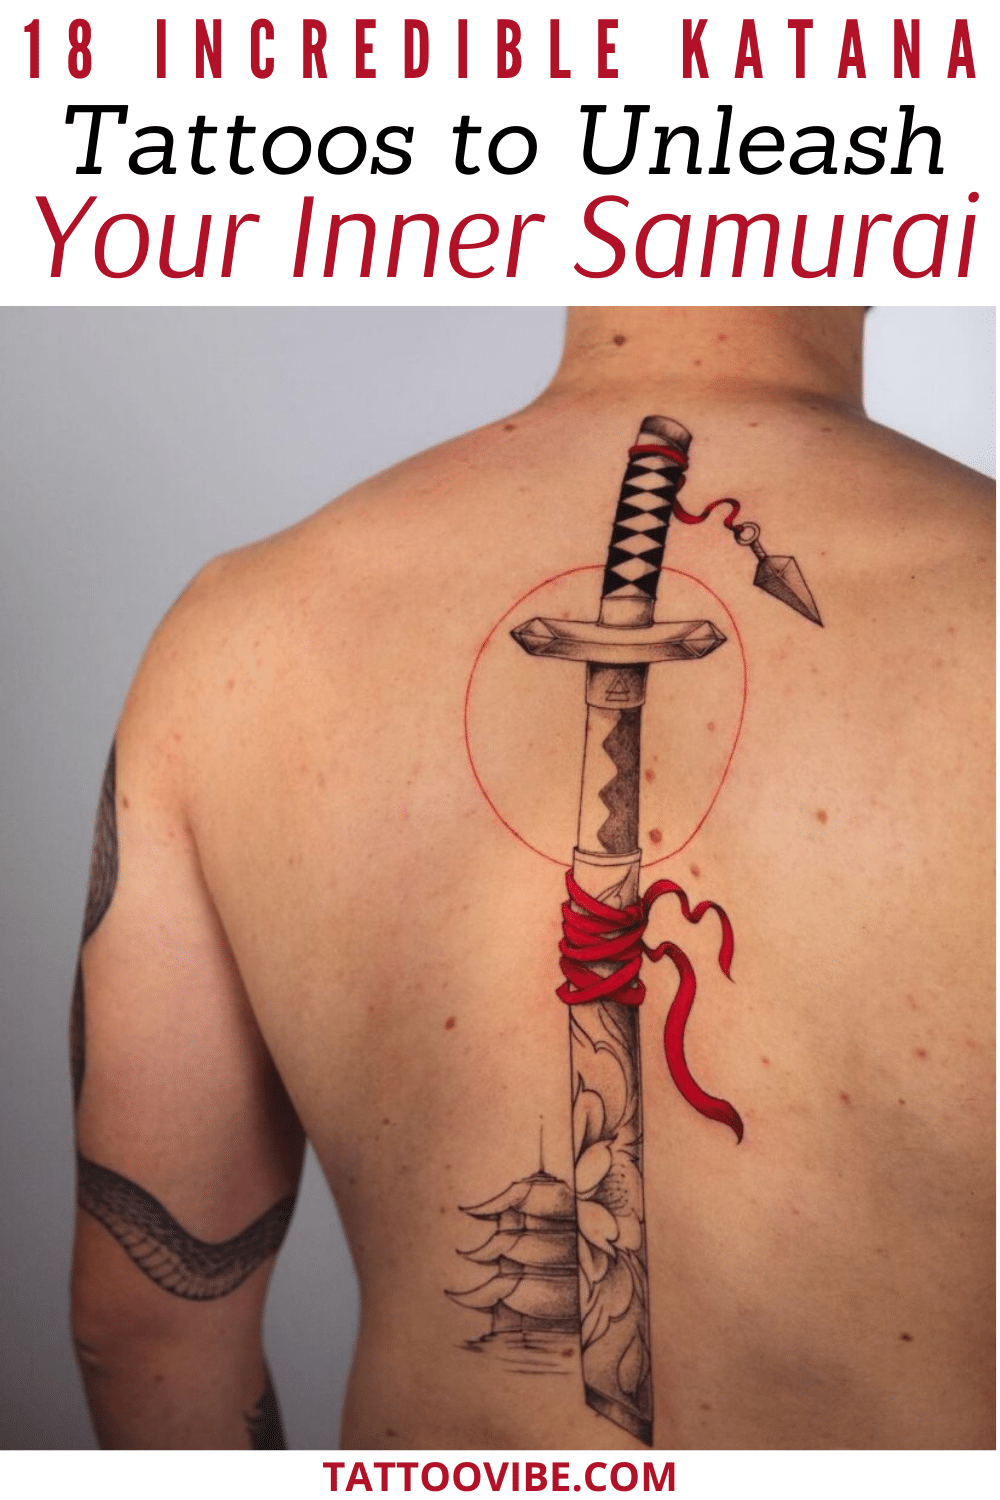 18 tatuagens incríveis de katana para libertar o seu samurai interior